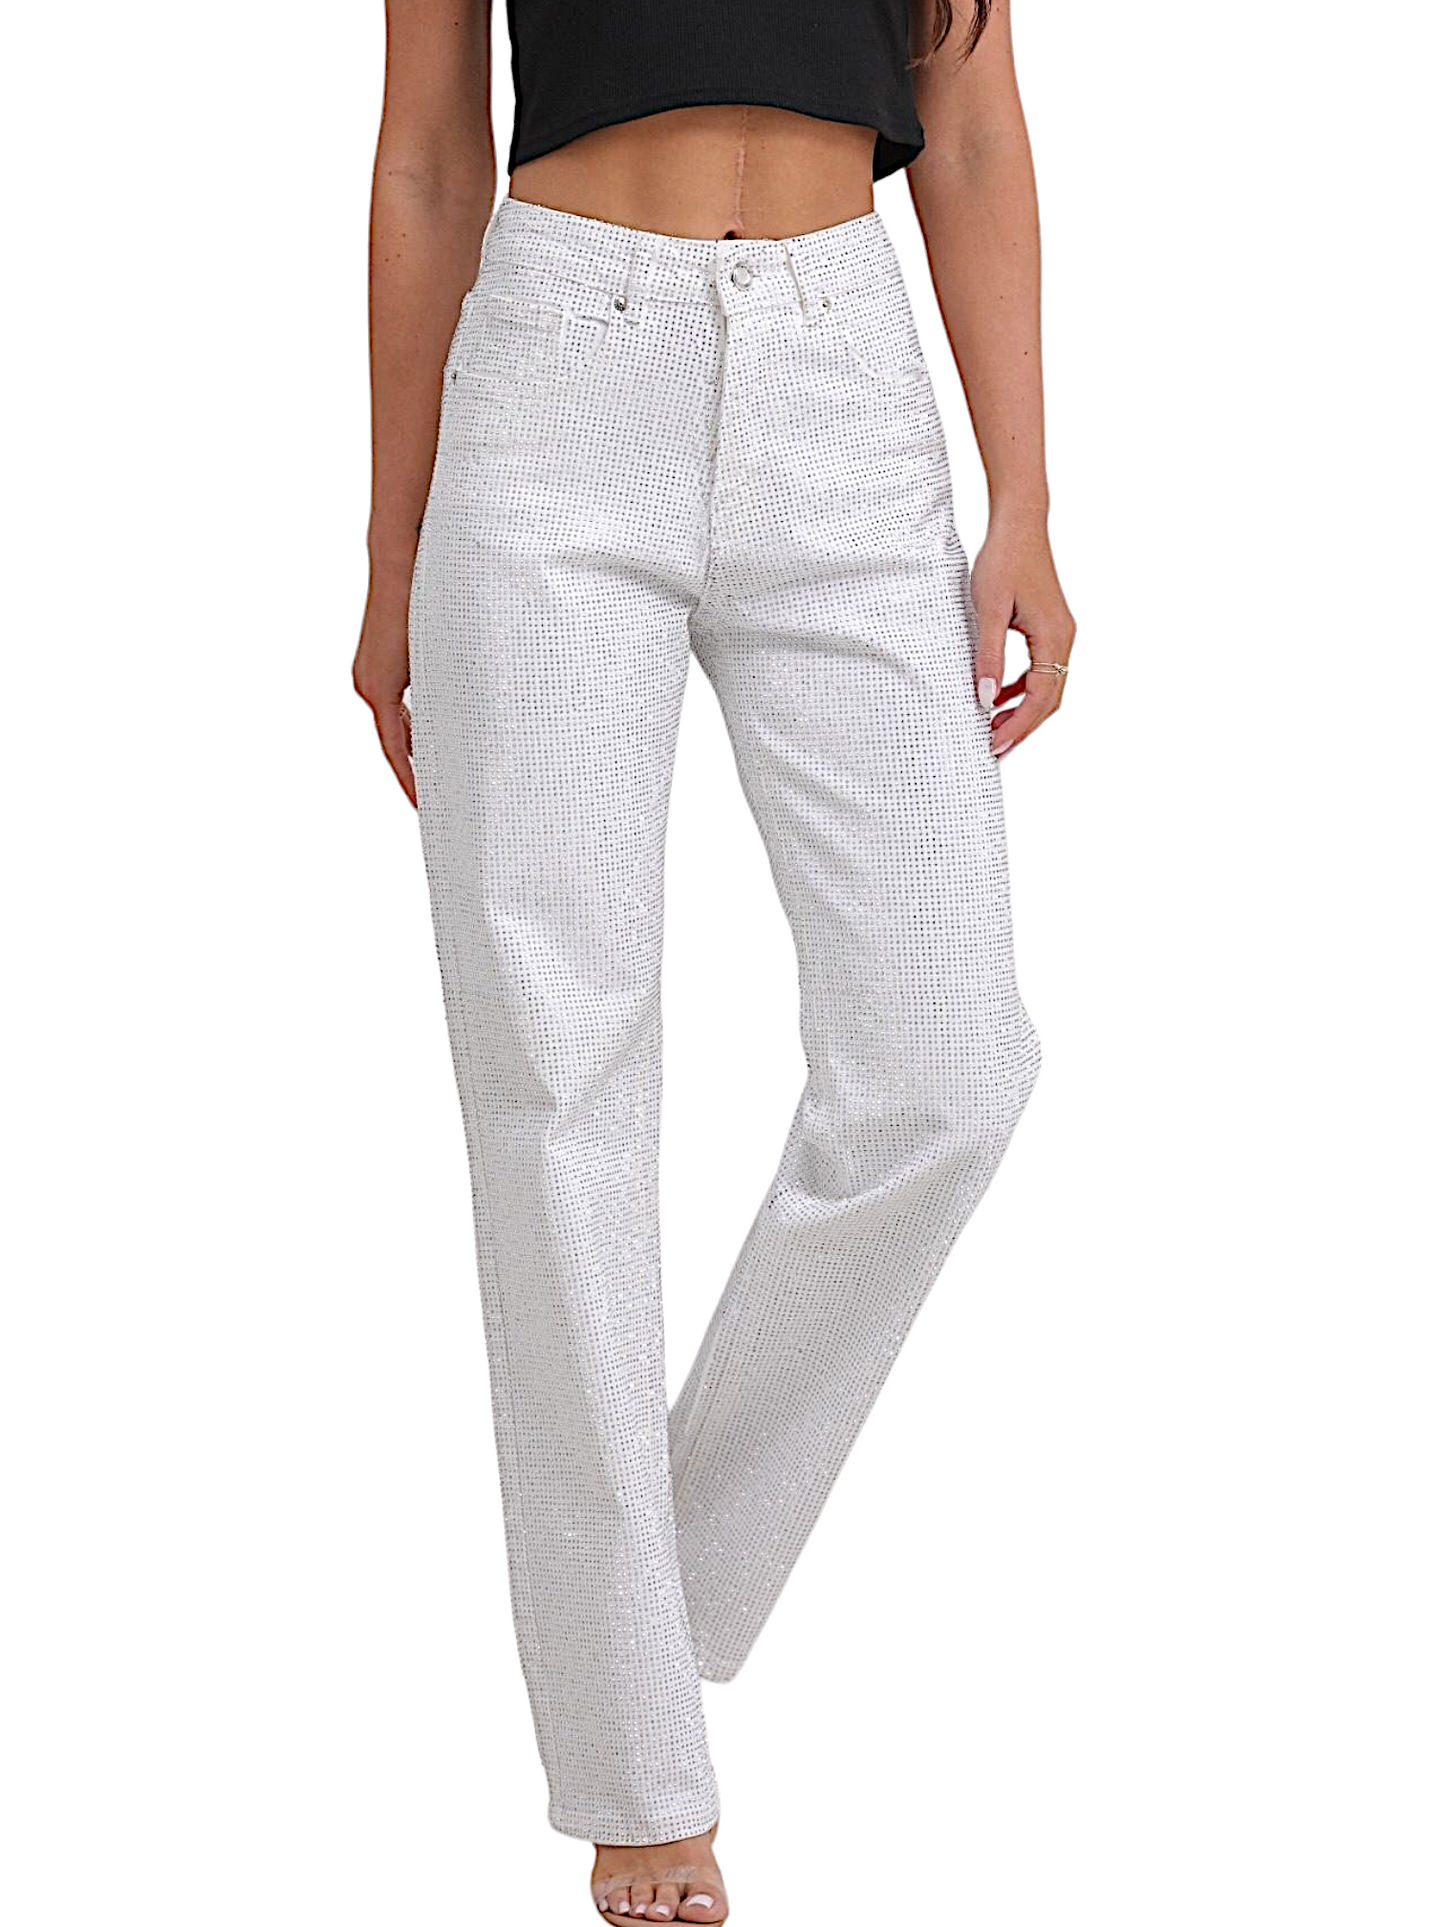 Jeans in bianco multi strass (super richiesto)